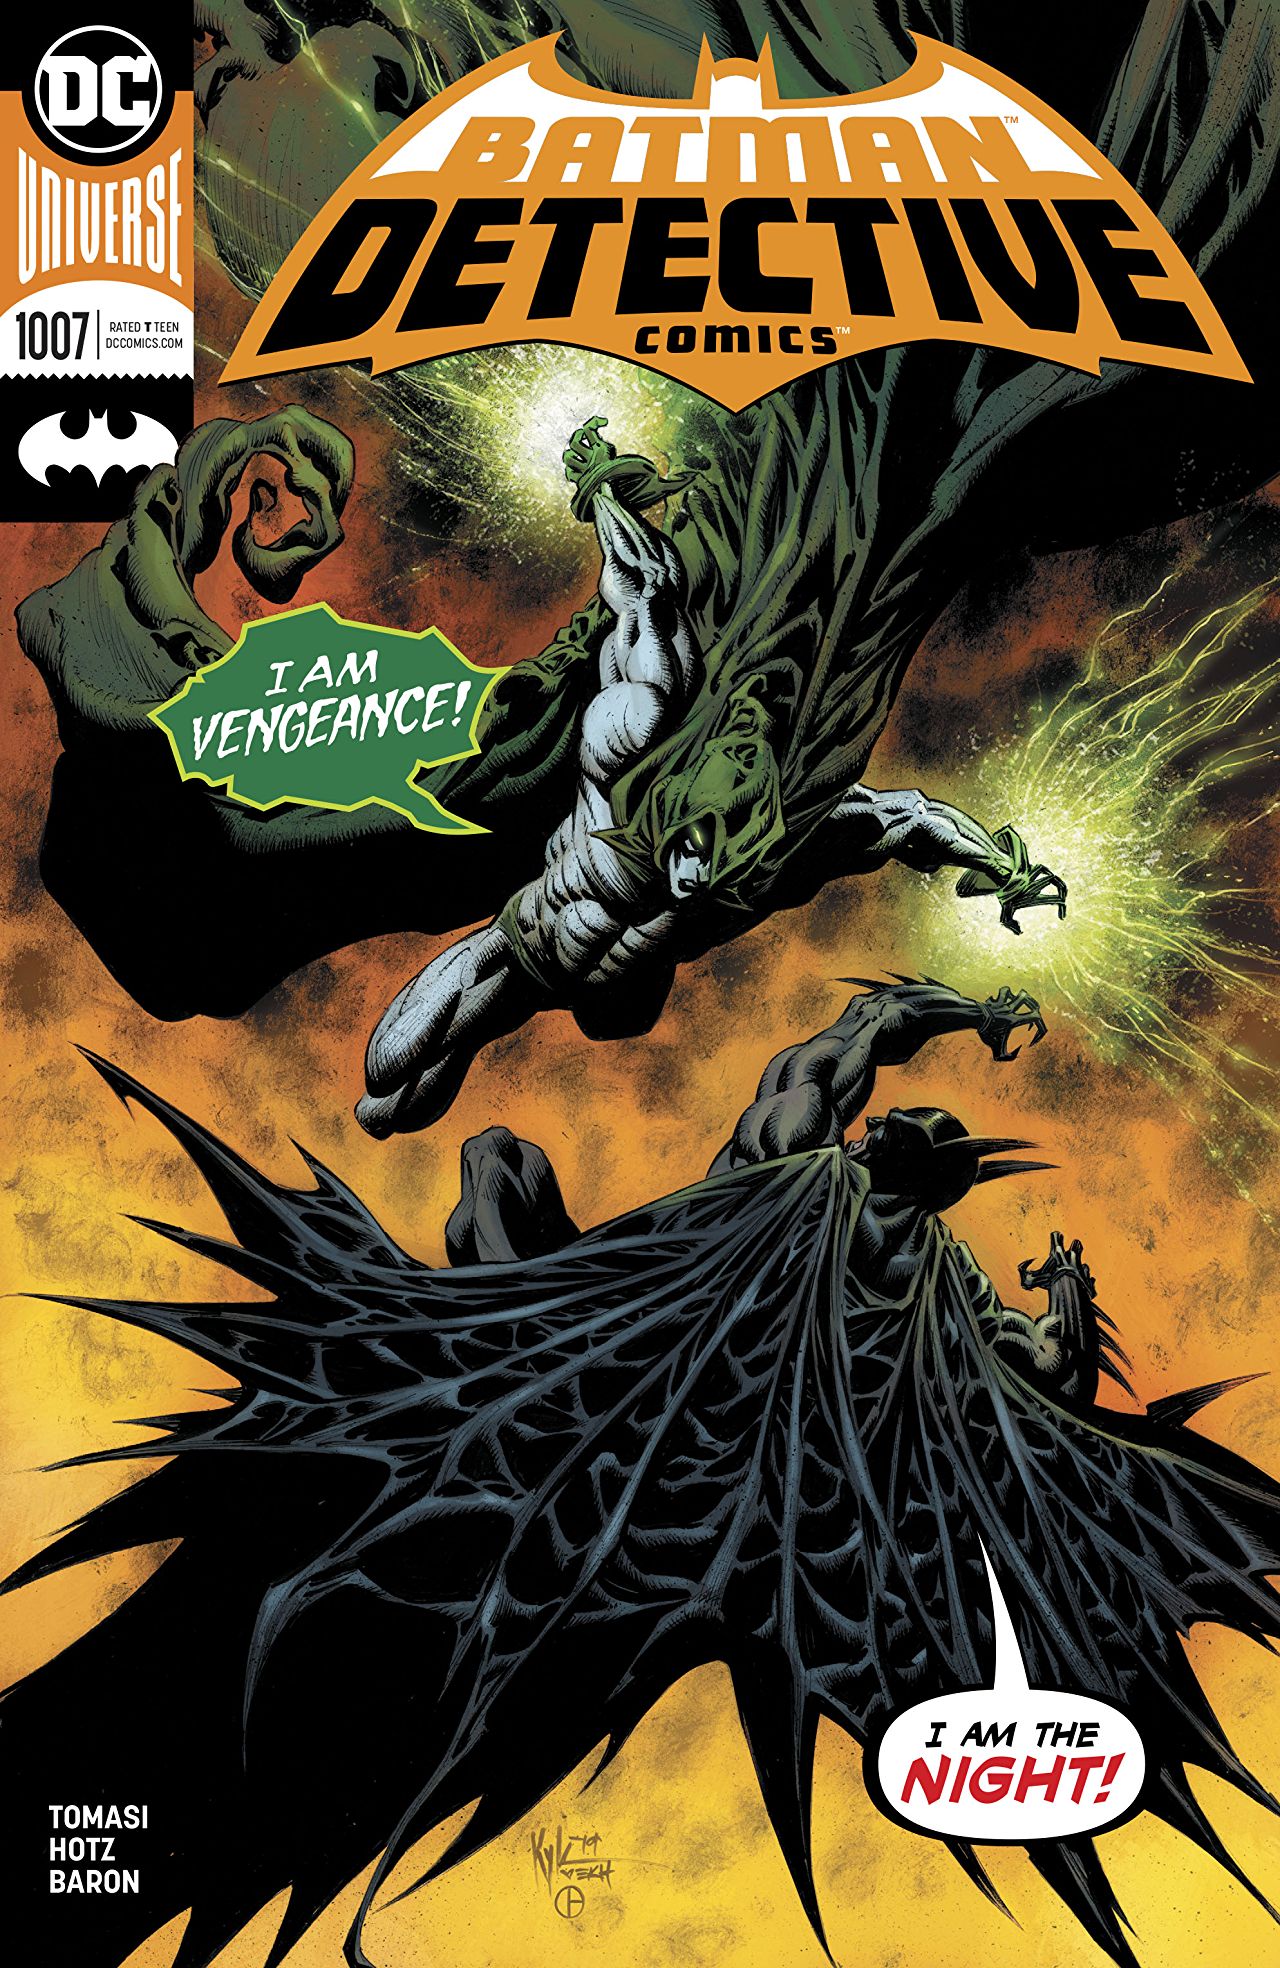 Review: Detective Comics #1007